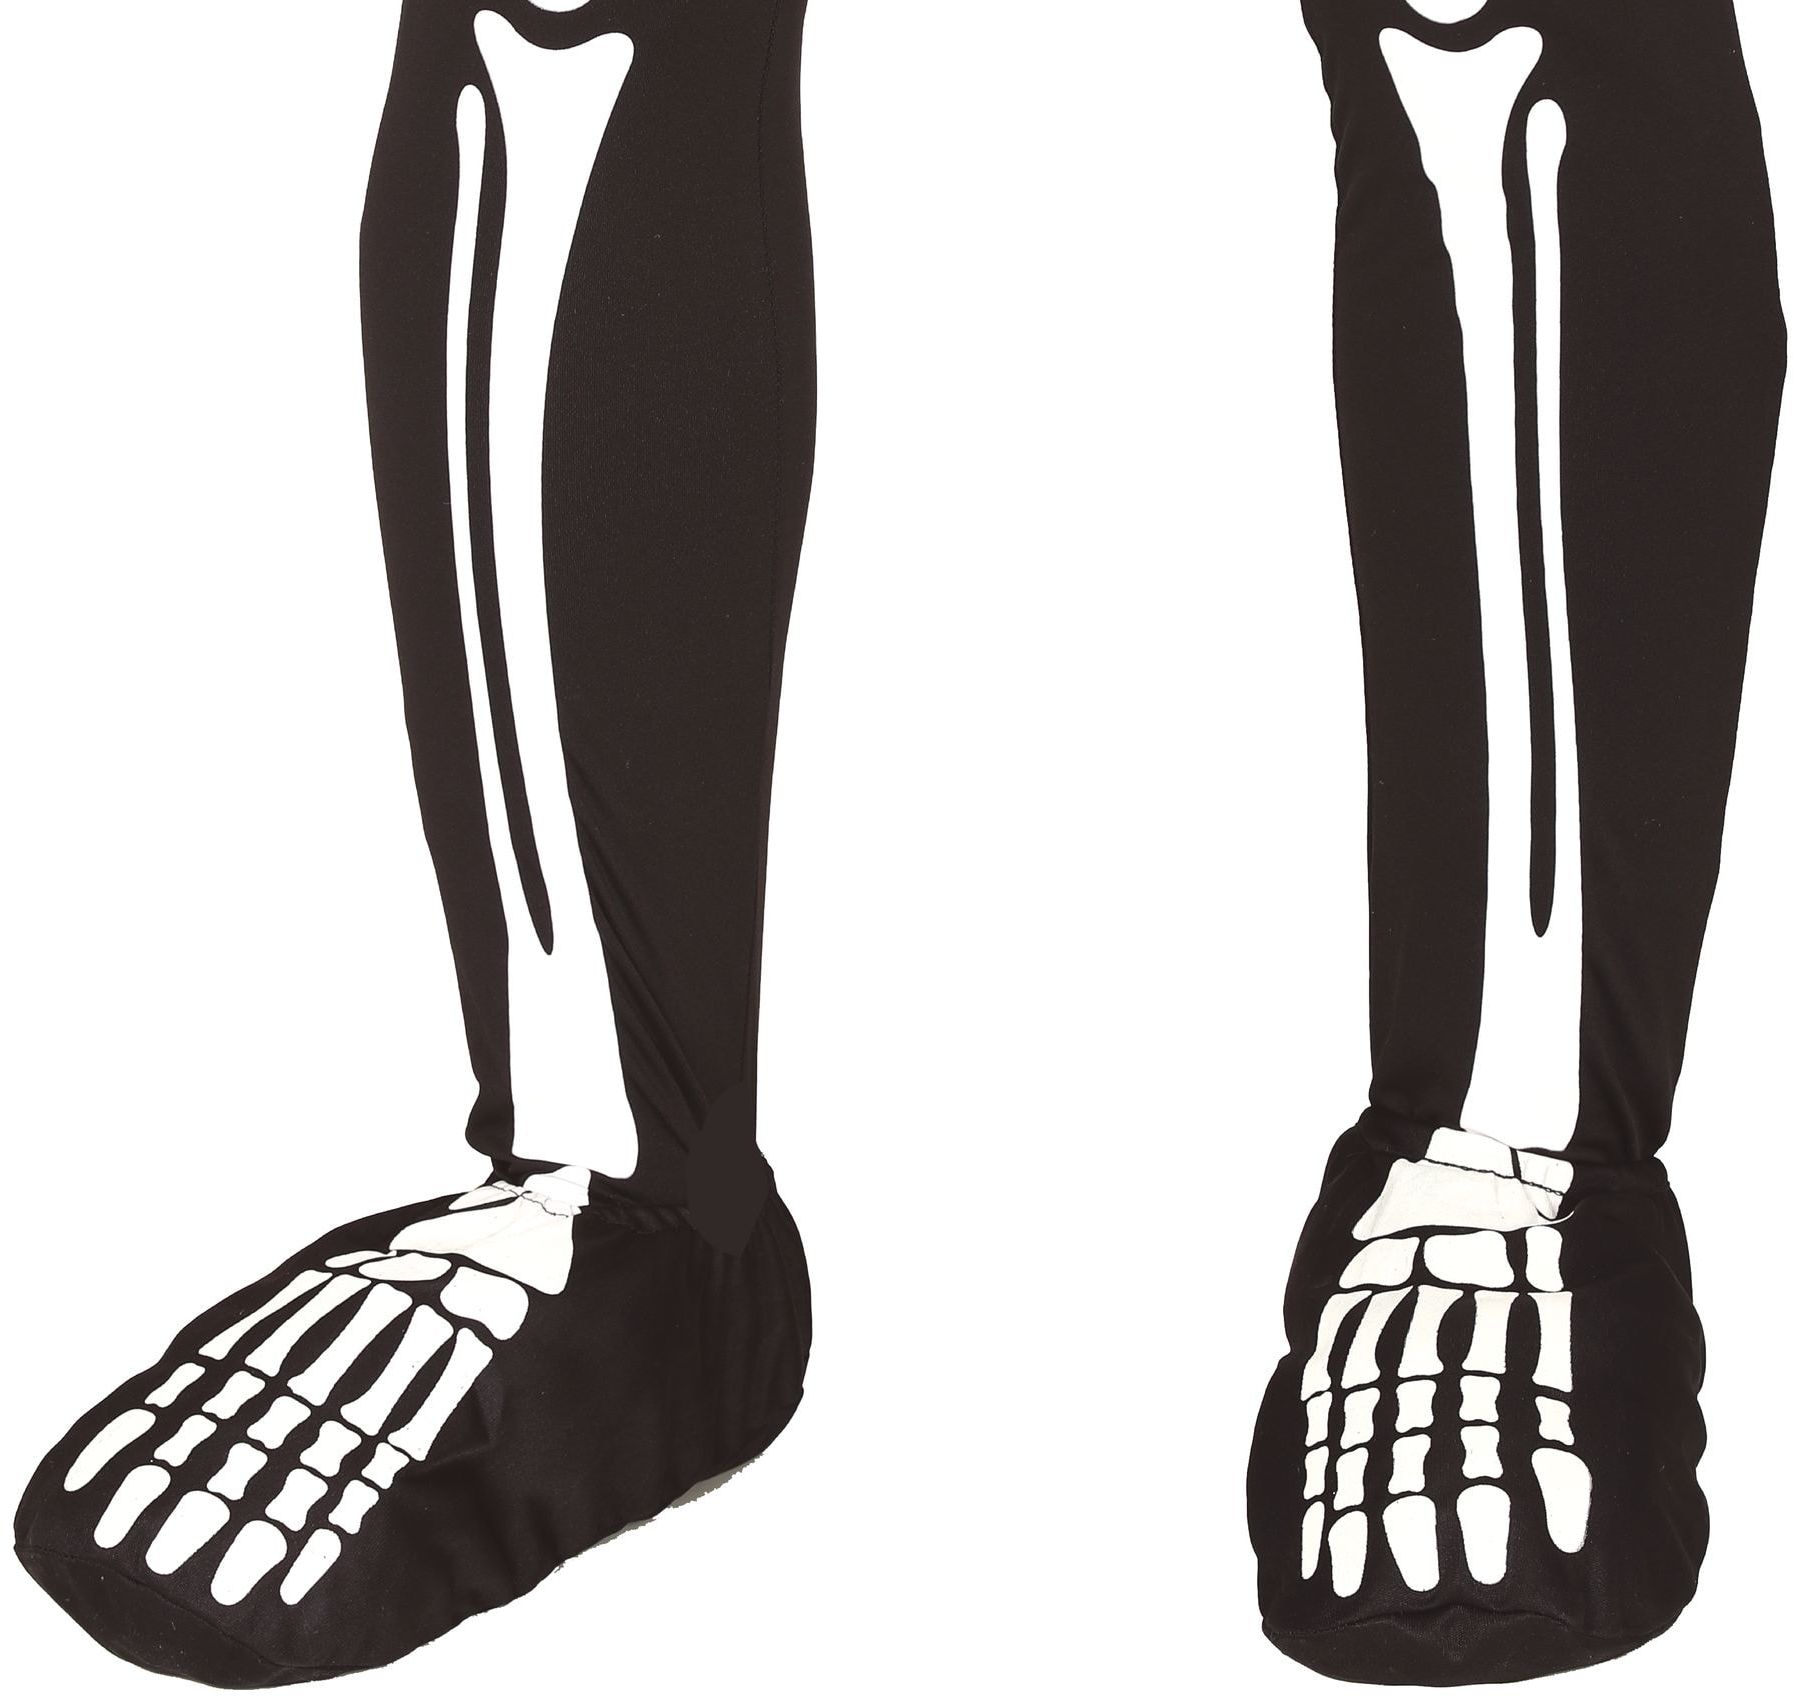 Skelet botten been hoezen